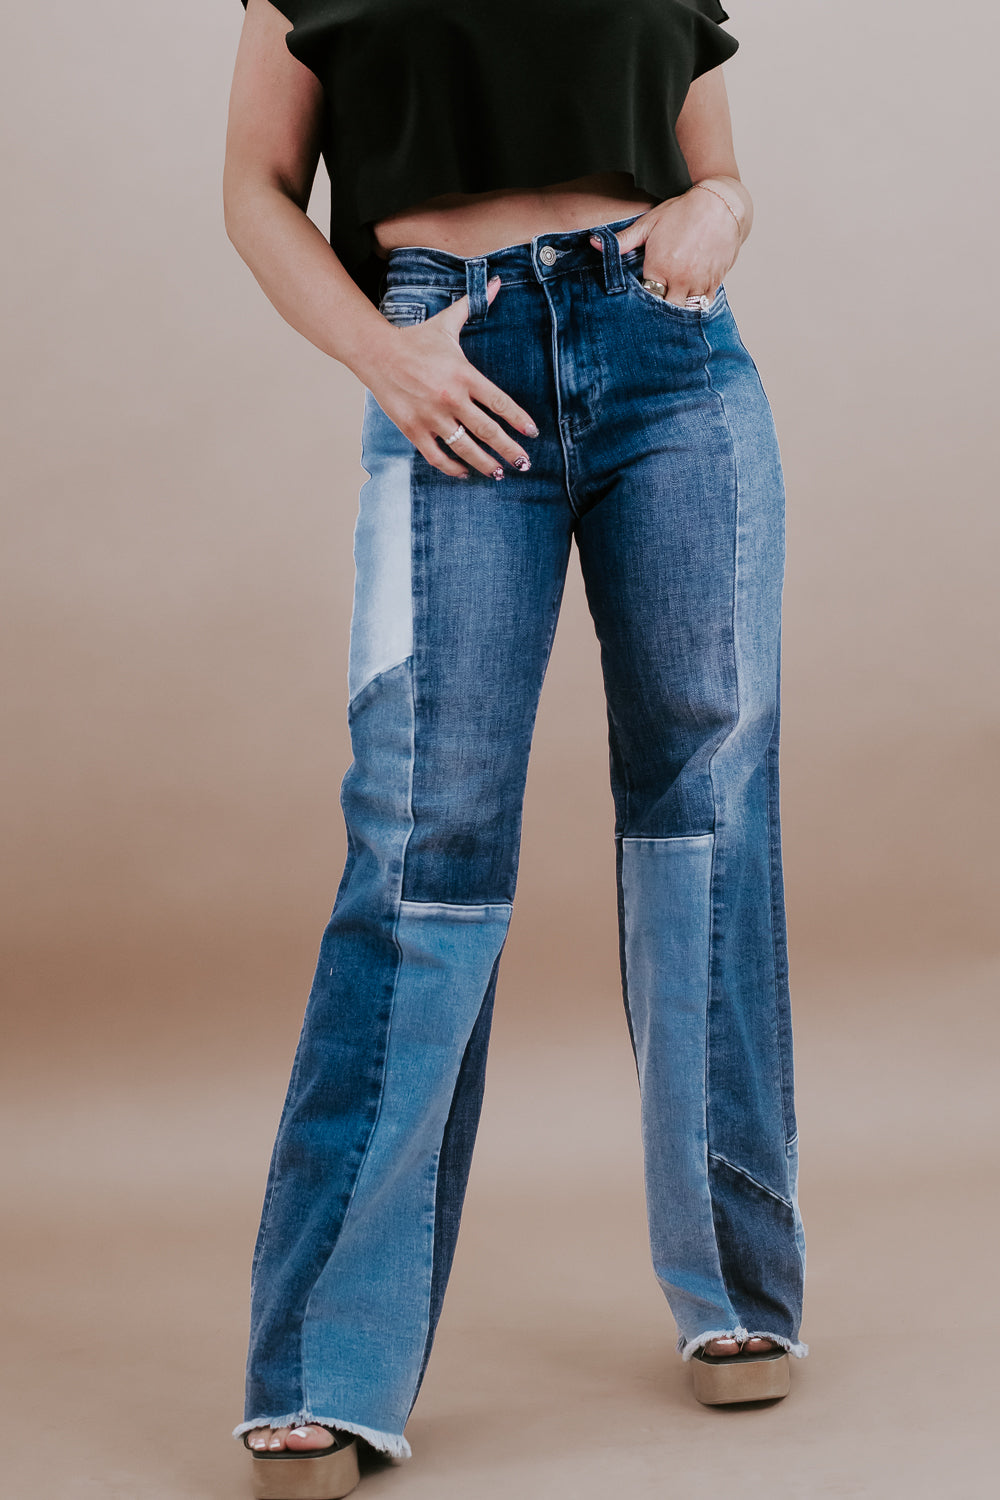 90's Vintage Loose Fit Denim Jeans, Heavenly VERVET